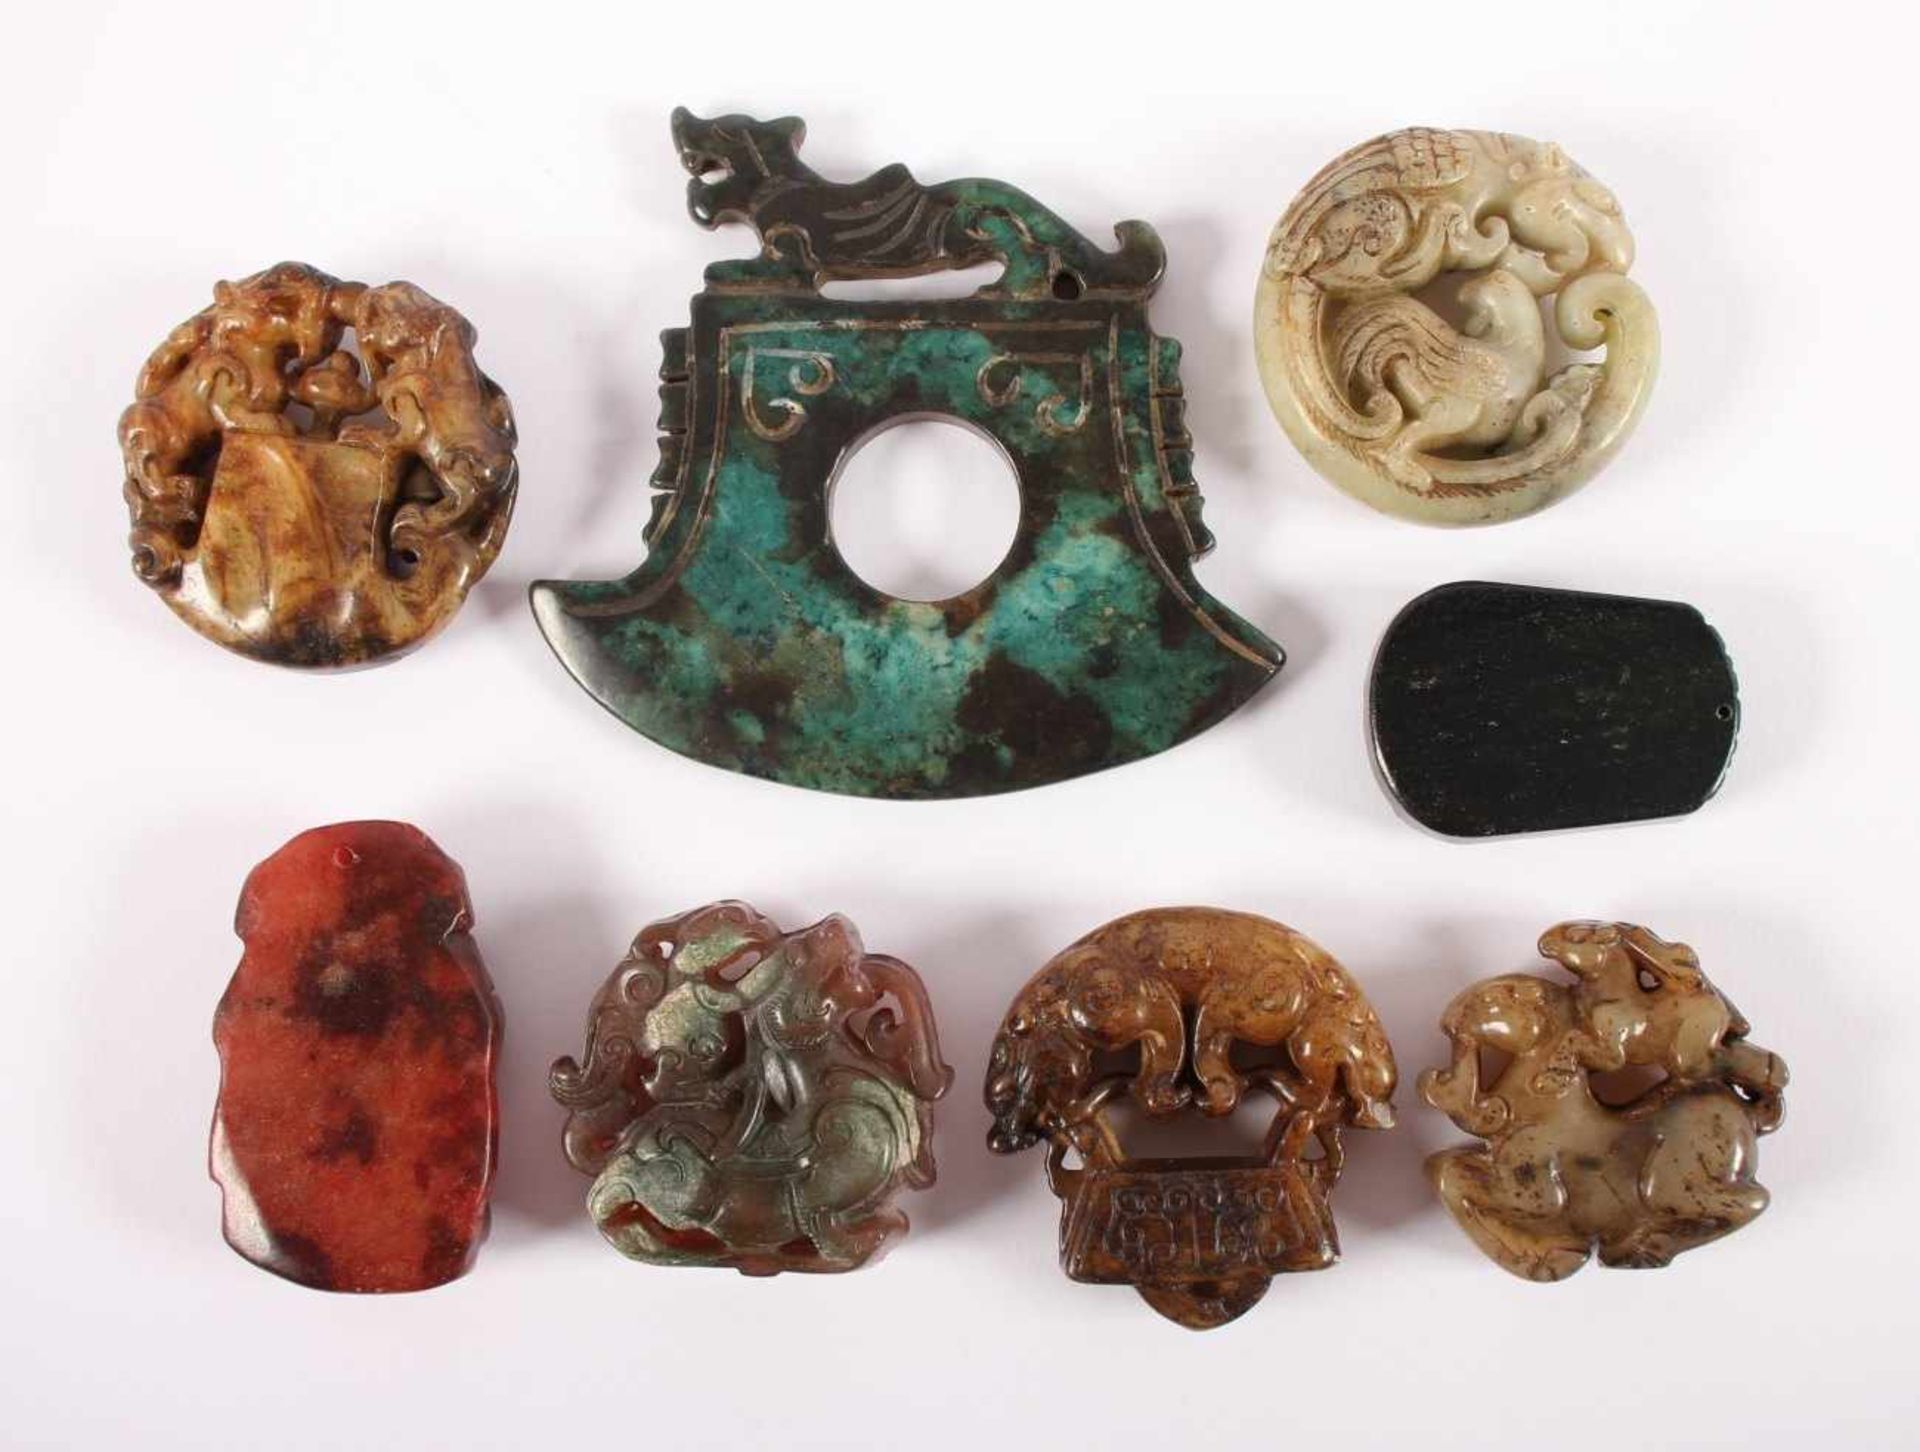 ACHT STEINSCHNITZEREIEN, variierende Farben, Formen (meist Amulette) und Größen, L bis 10, CHINA - Image 2 of 2